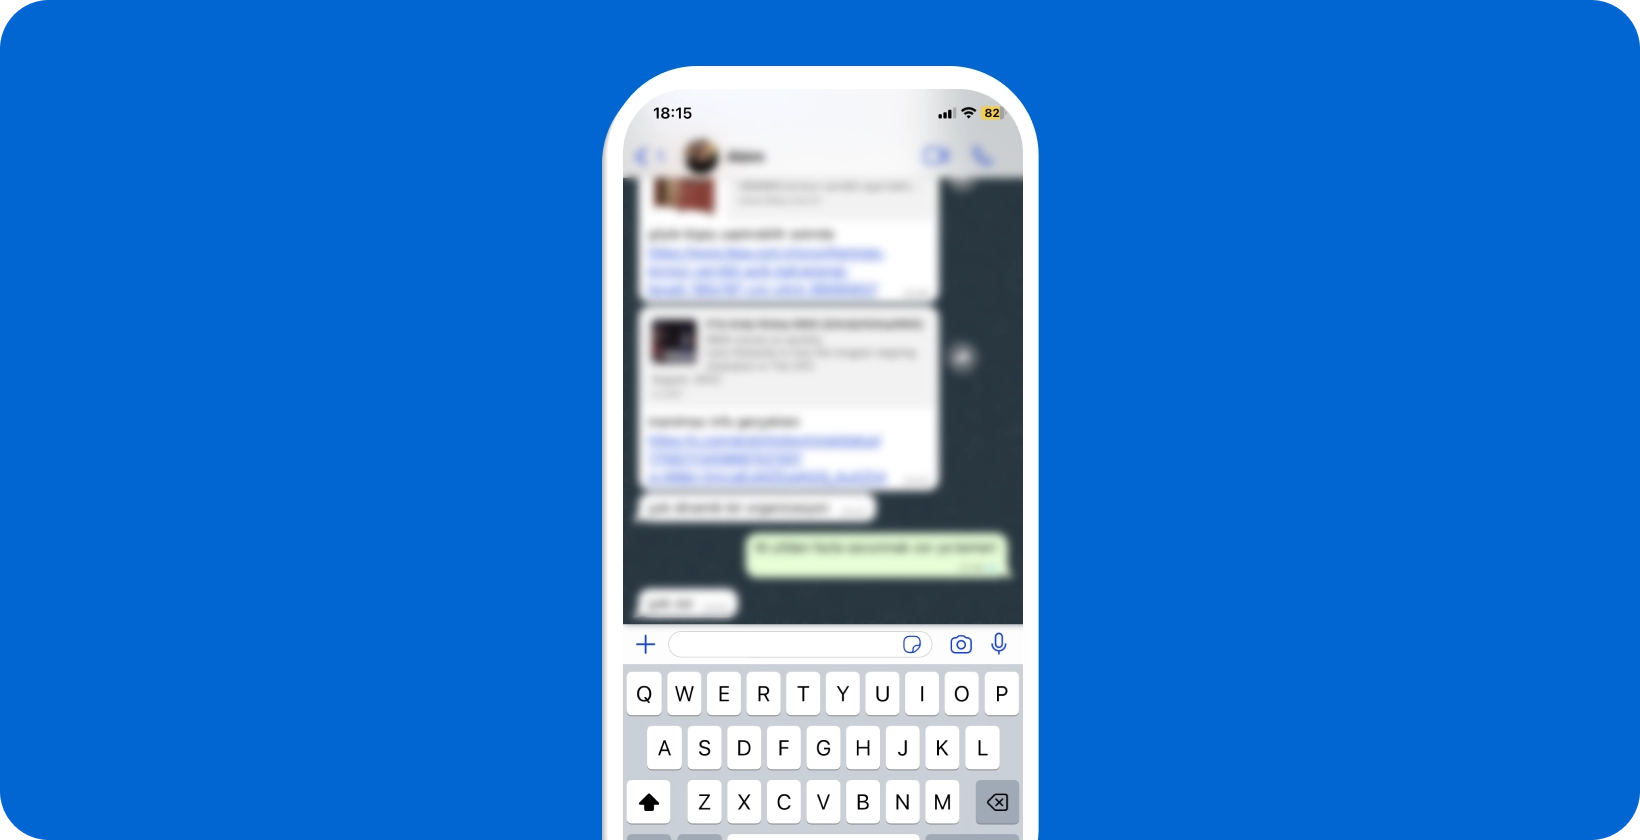 Smartfon wyświetlający aktywną rozmowę WhatsApp z otwartą klawiaturą, gotowy do dyktowania głosu.